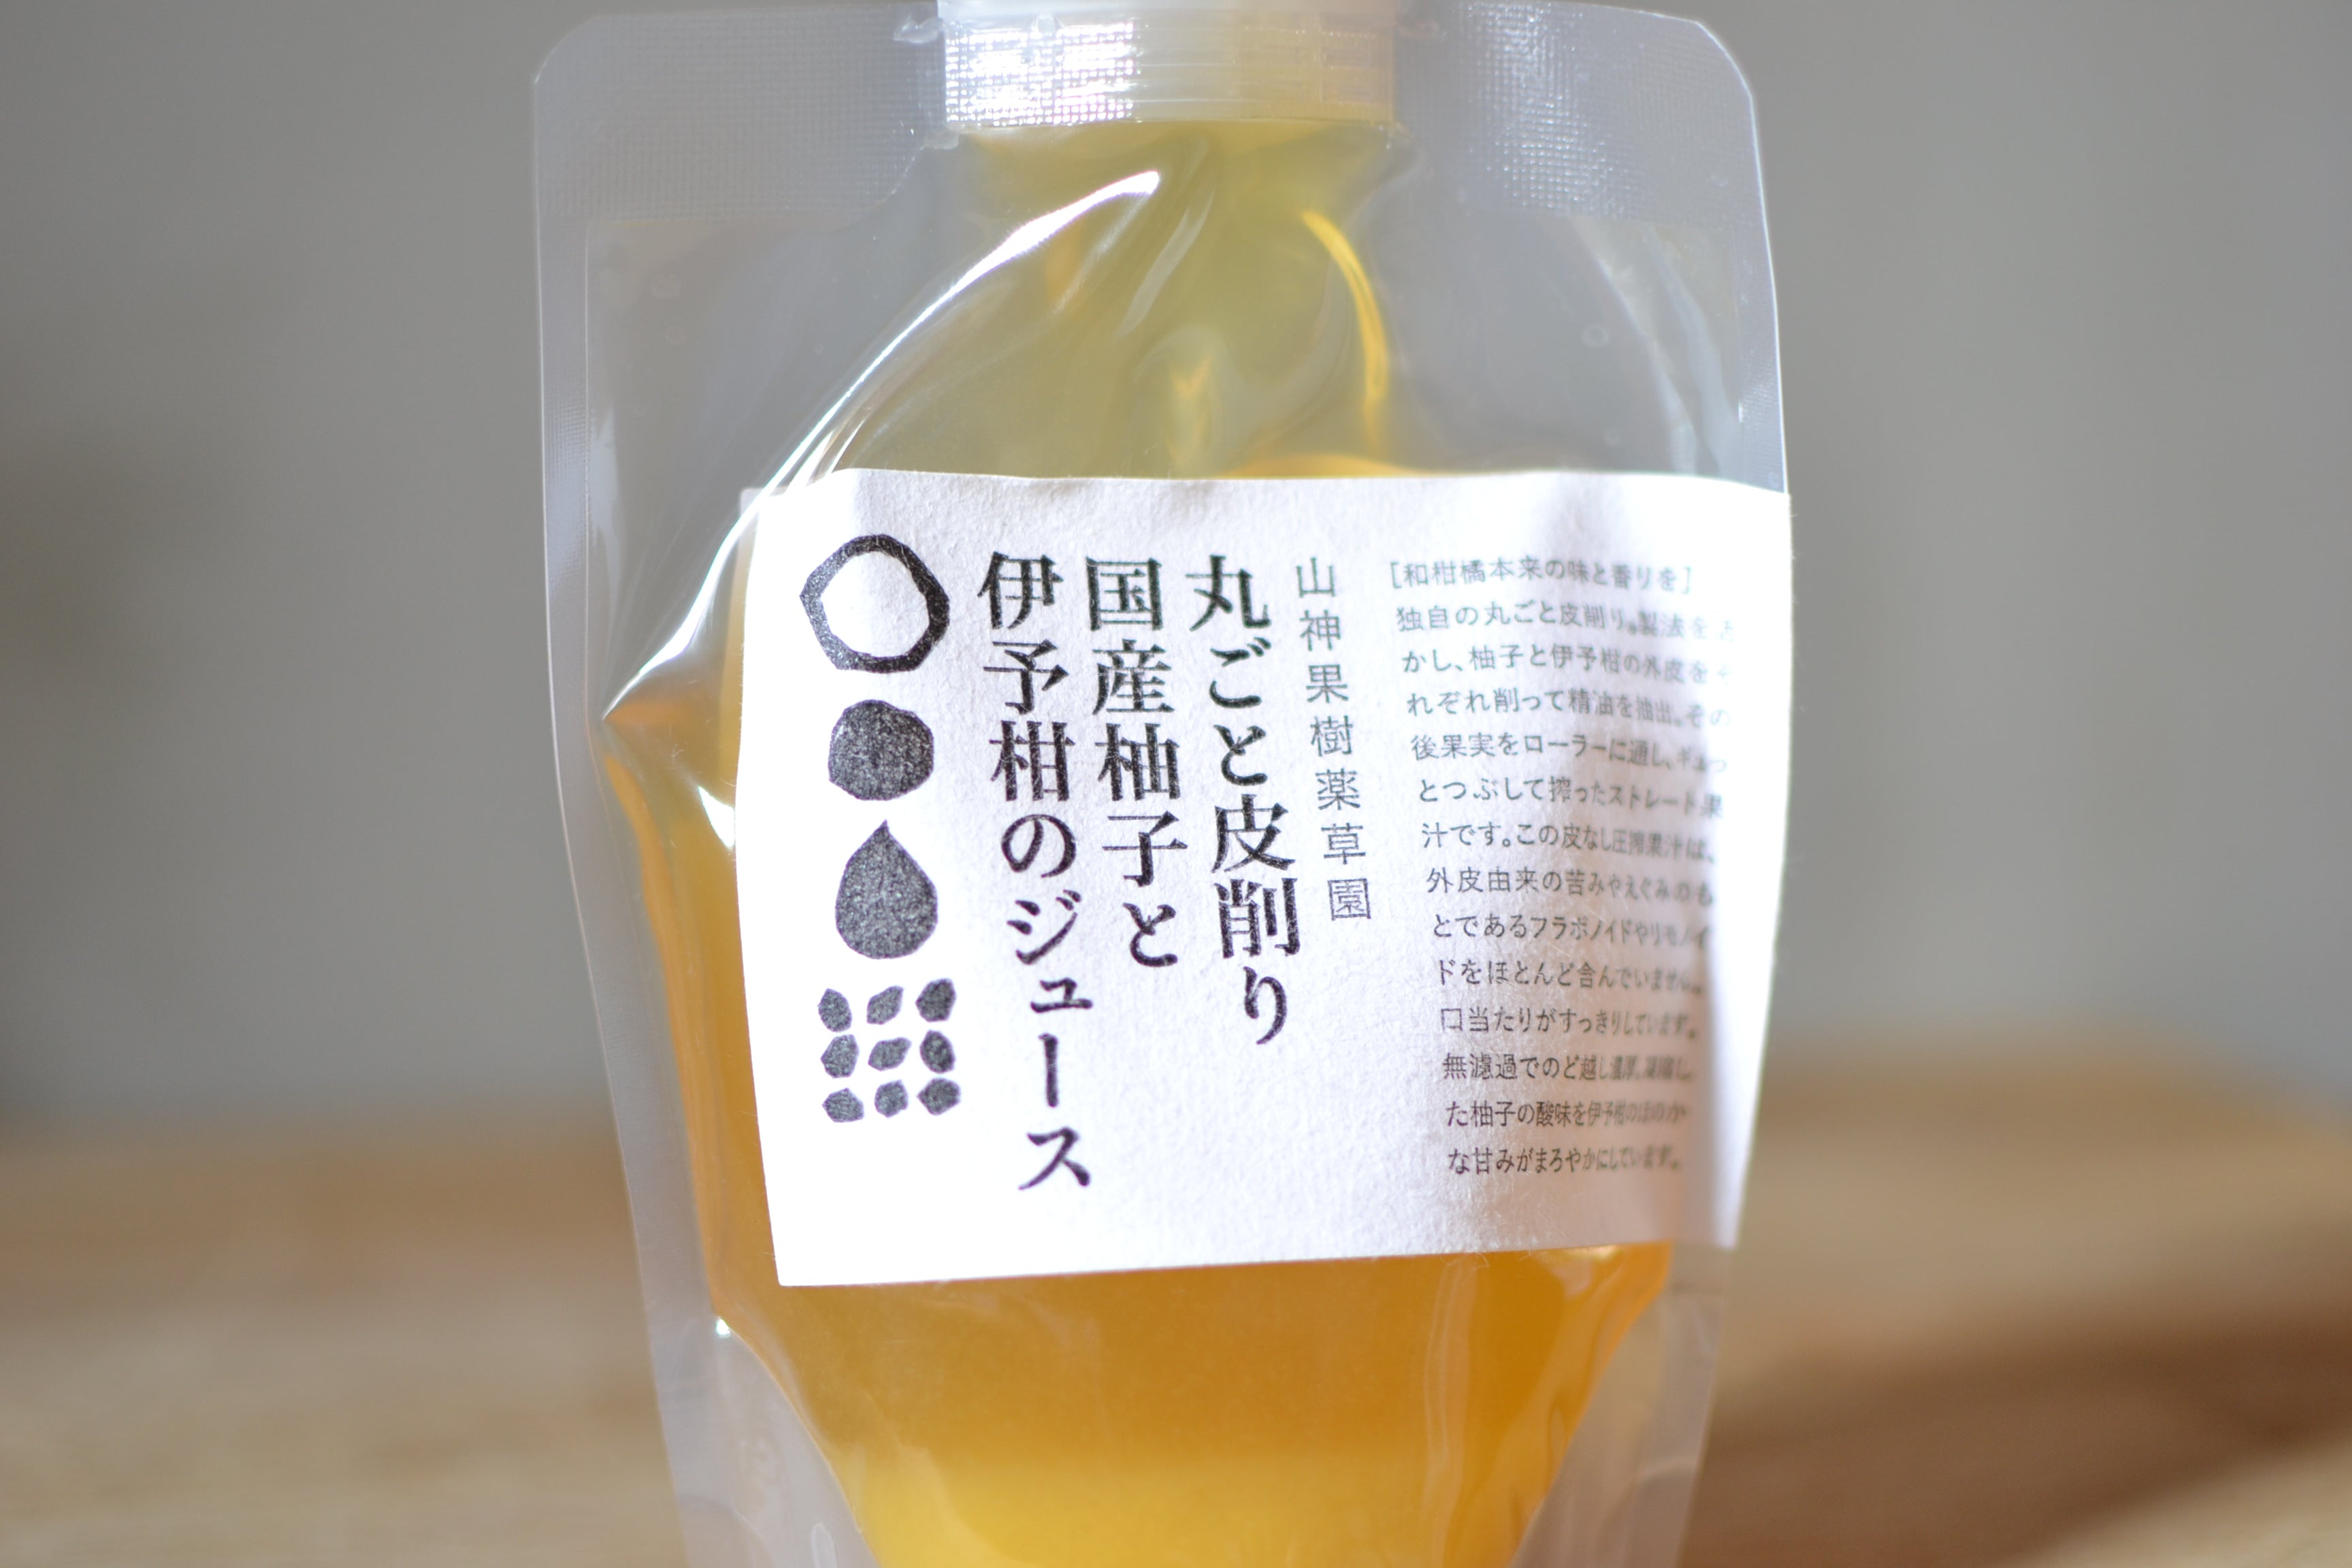 丸ごと皮削り柚子と伊予柑のジュース200ml MARKS&amp;WEB 松山油脂の山神果樹薬草園